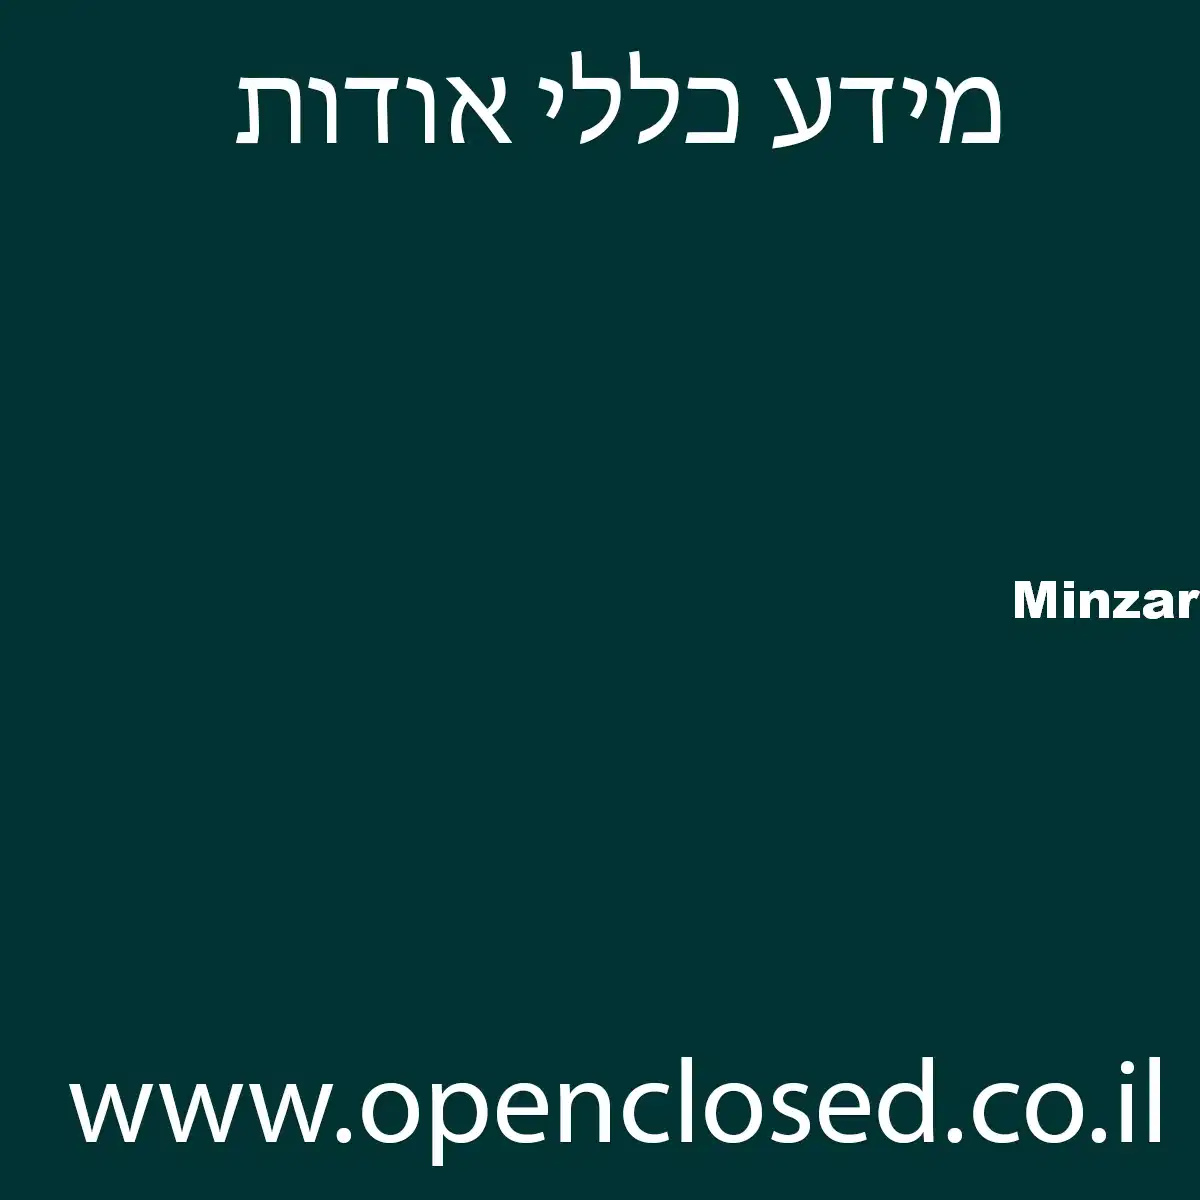 Minzar